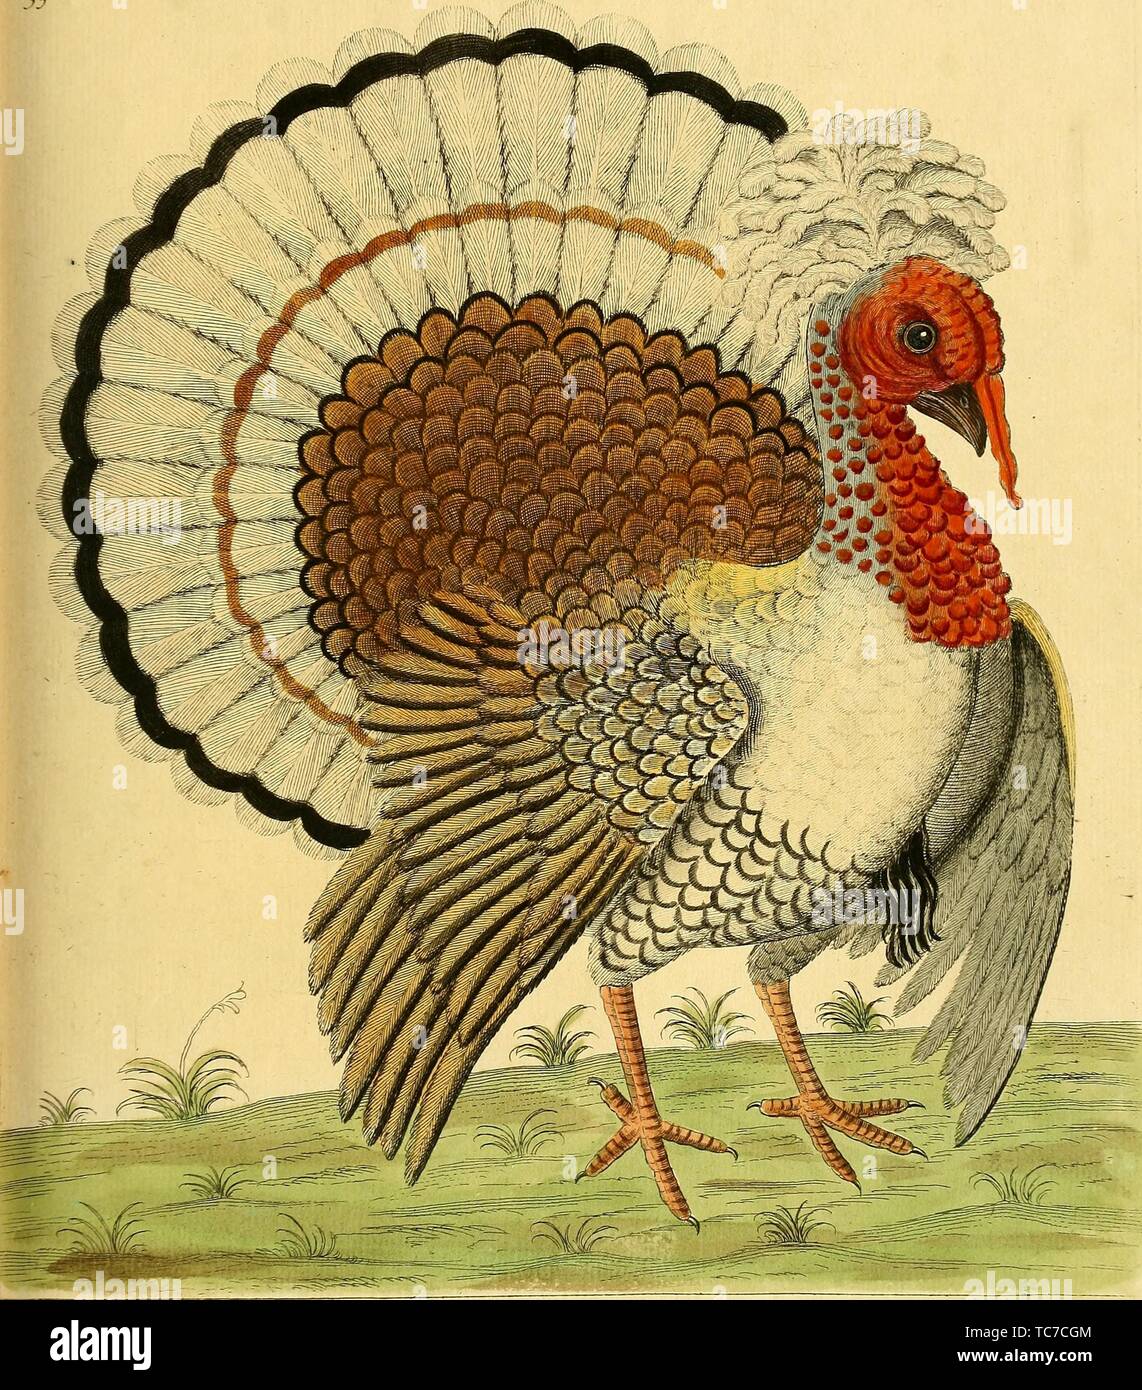 Dessin gravé de Cormoran à la Turquie, du livre "Une histoire naturelle des oiseaux" par Eleazar Albin, 1731. Avec la permission de Internet Archive. () Banque D'Images